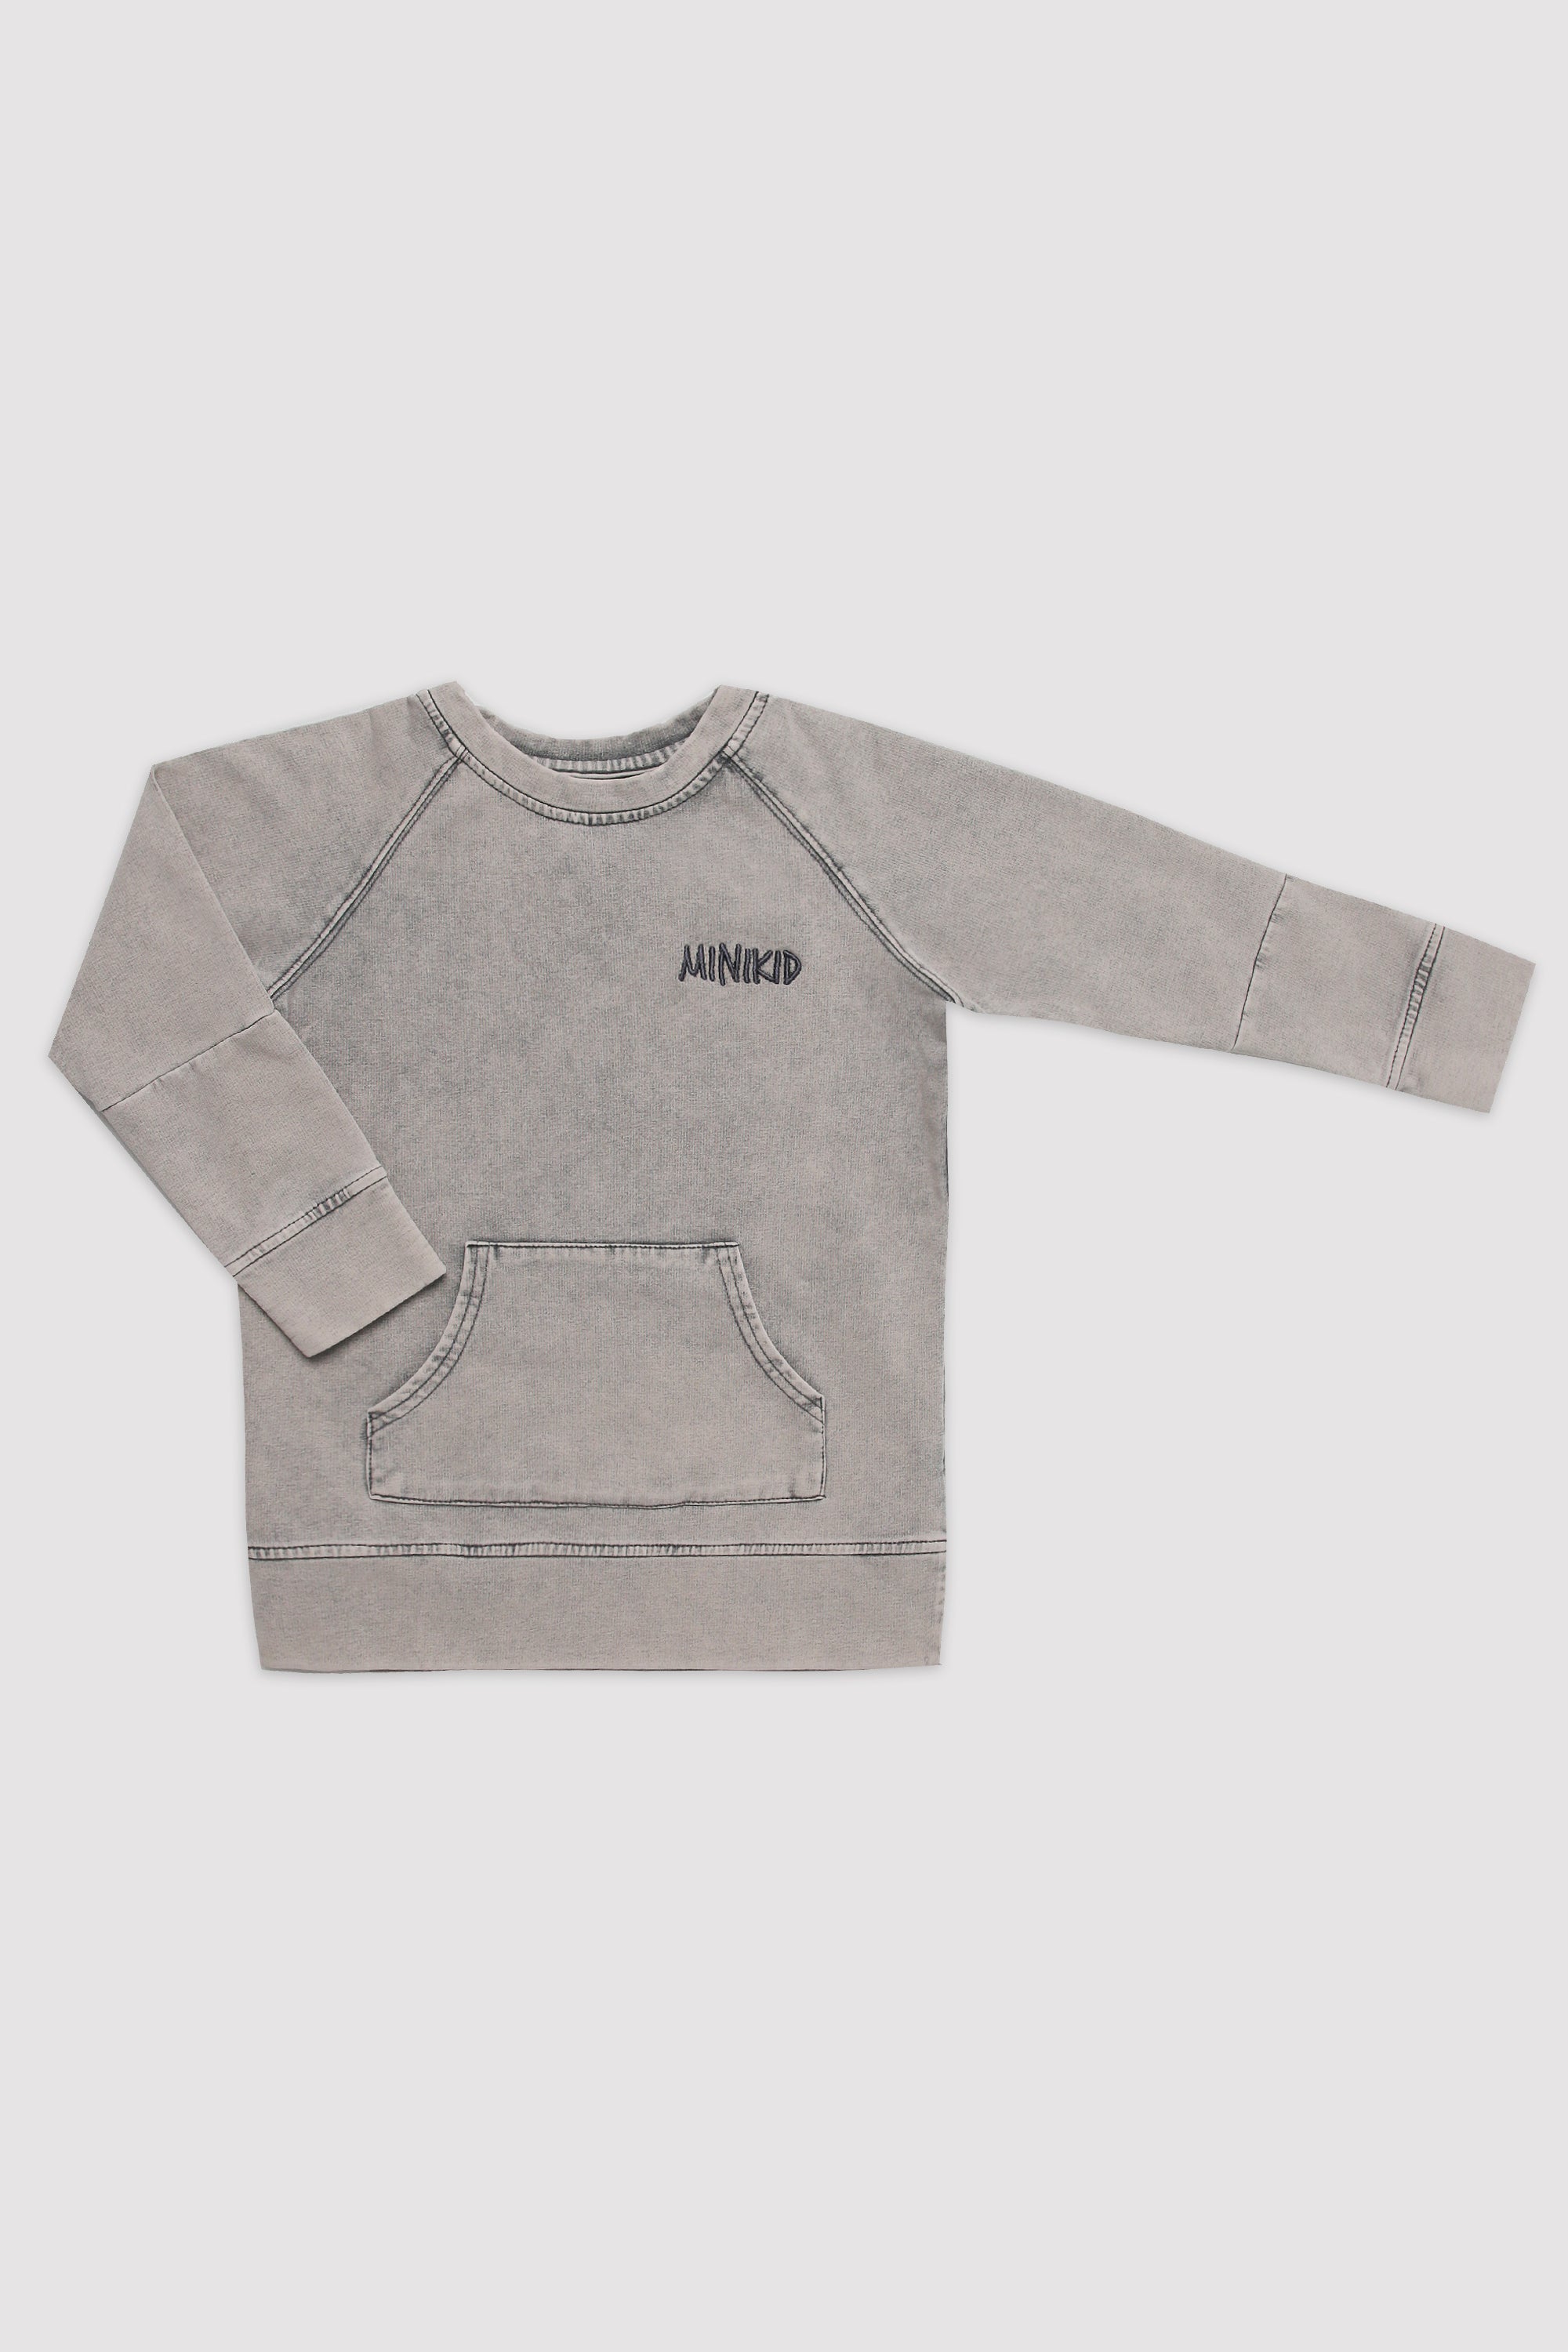 Minikid - Sweatshirt Acid Grey